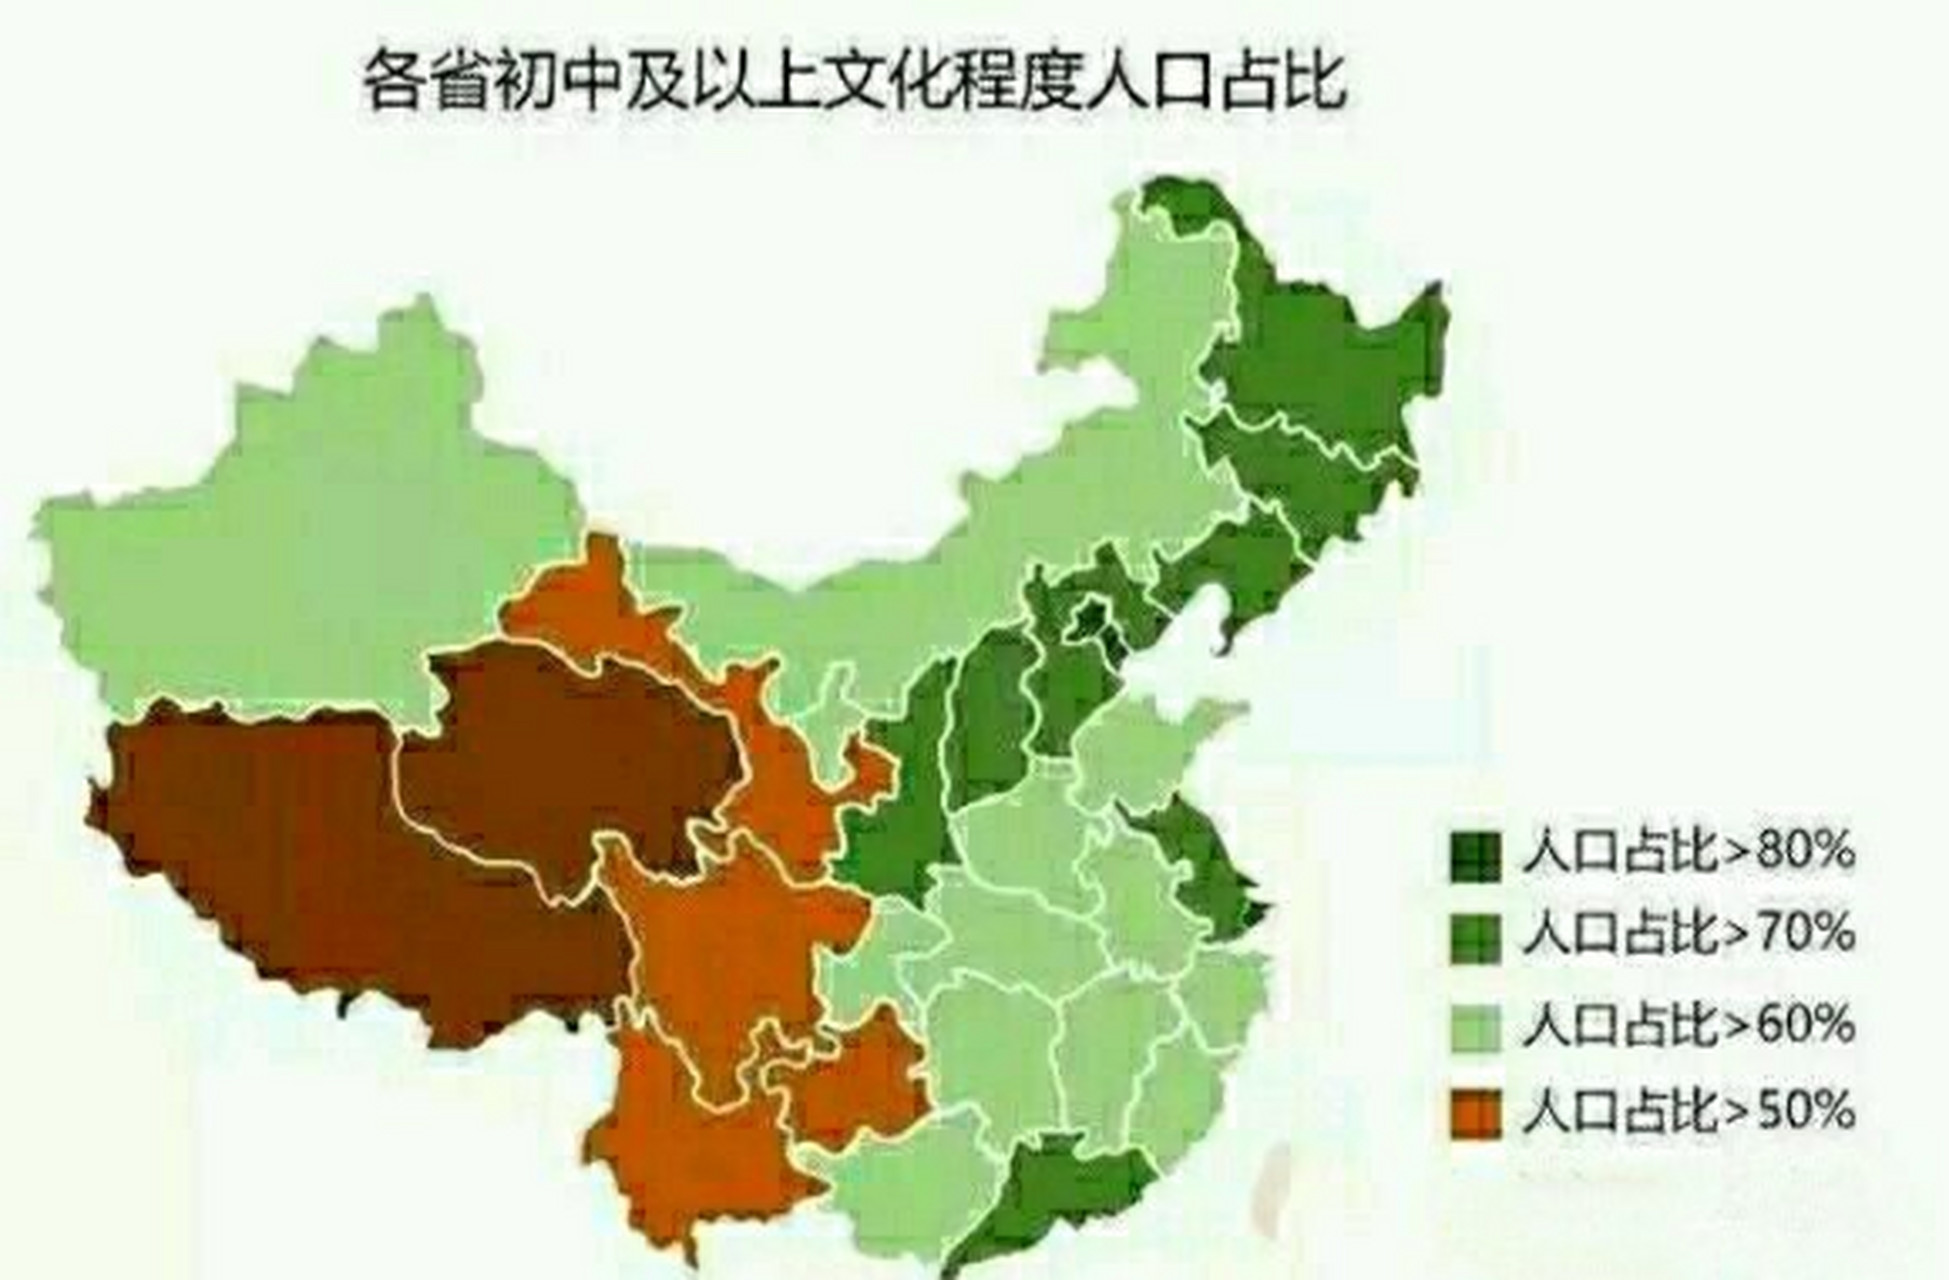 中国各省受教育水平,有你在的省份吗? 中国人口姑且13亿来算